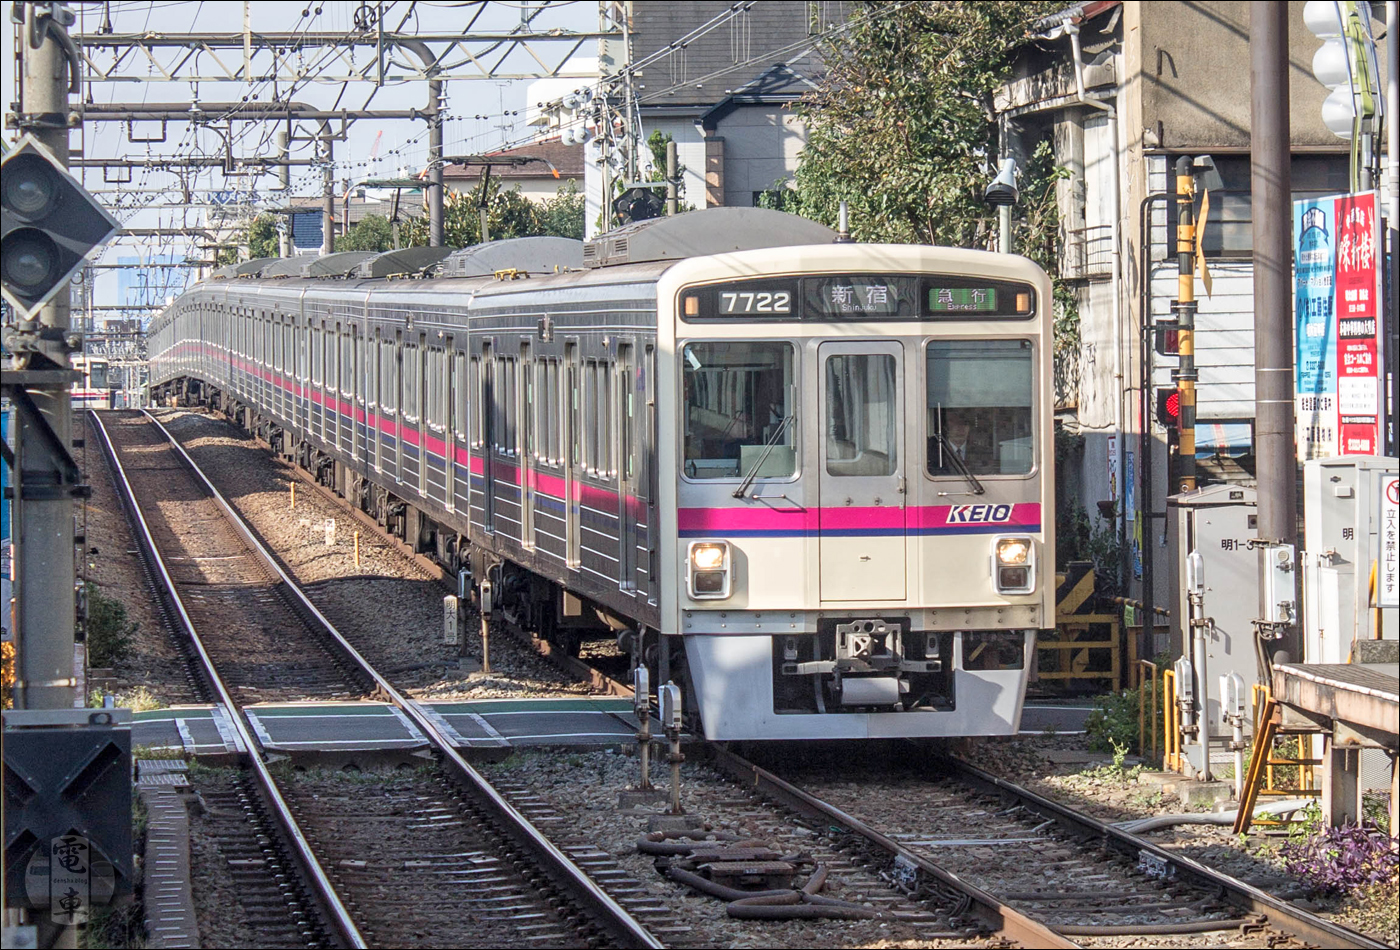 Keio 7000-es sorozatú motorvonat Meidaimae megállónál. A Keio által használt „különleges” 1372mm-es nyomtáv sem a társaság különcködésének köszönhető, hiszen jogelődjeinek a villamosokat, és nem a vasutat szabályozó törvények szerint kellett megválasztaniuk a nyomtávot, noha végül közvetlen forgalom sosem zajlott a Toden és a Keio hálózata között. Érdekesség, hogy a Toei Subway Shinjuku vonalát később, az 1970-es években éppen a Keioval való átjárhatóság miatt építették efféle nyomtávval, mely azóta is Japán egyetlen 1372mm-es nyomtávval megépült metróvonala.